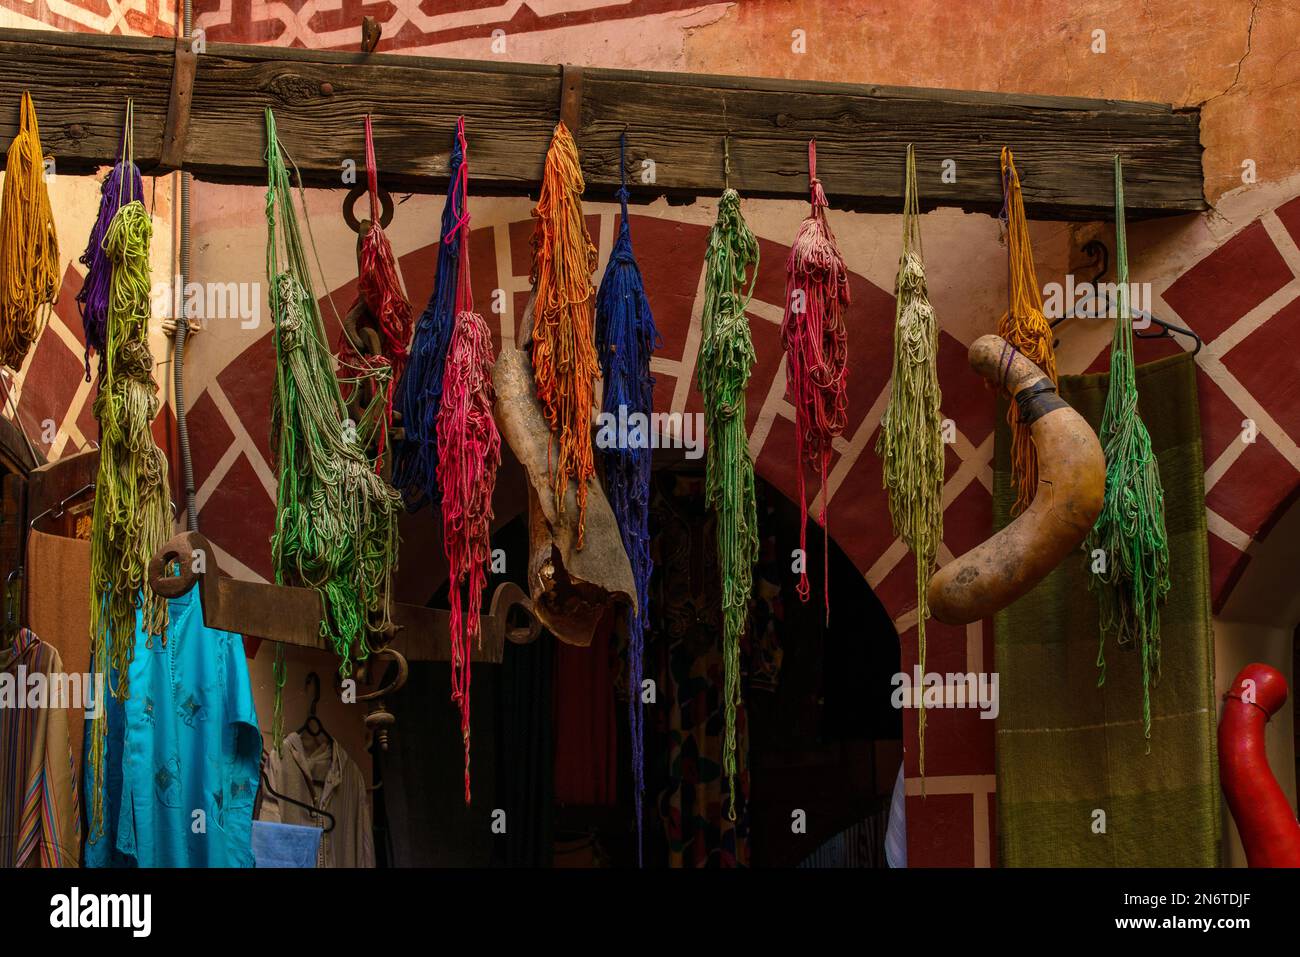 Die trockenen, farbenfrohen Taschentücher in den Straßen von Marrakesch, Marokko, schaffen eine lebendige und lebendige Szene. Ihre leuchtenden Farbtöne, von tiefem Blau bis zu feurigen Rottönen Stockfoto